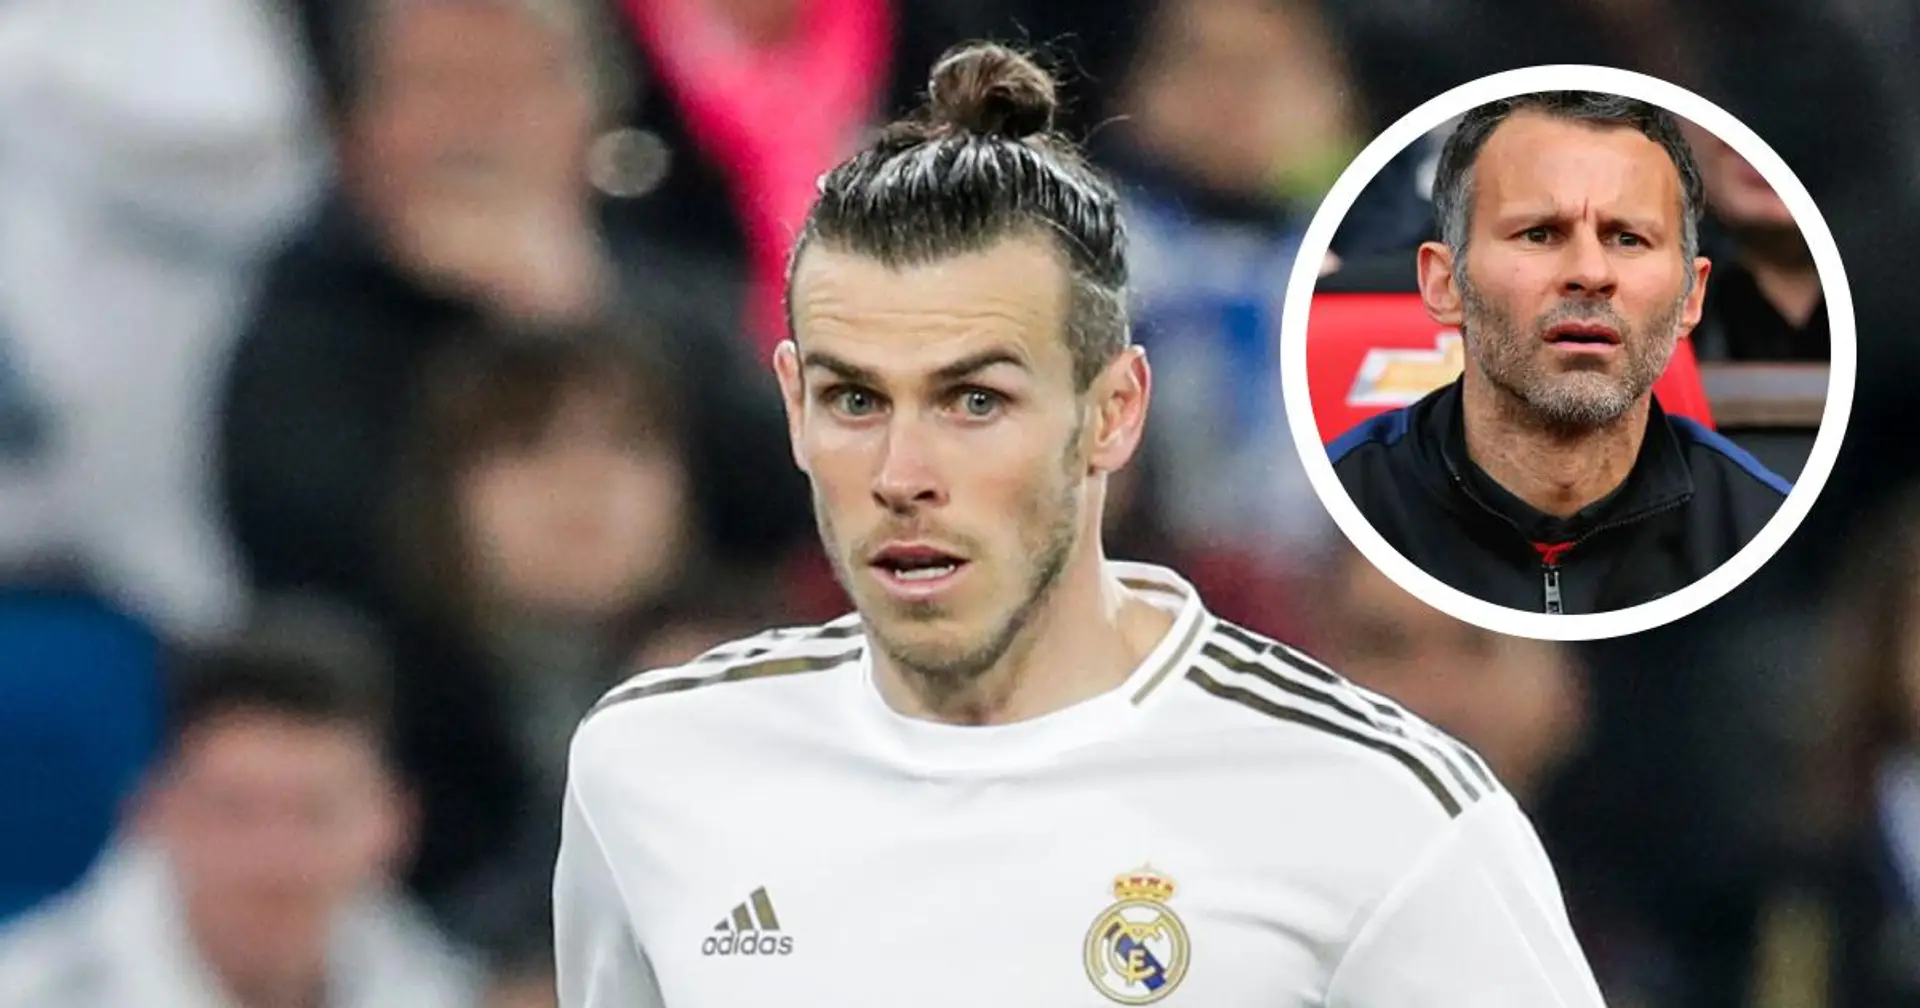 "Gareth est un joueur spécial": Giggs explique la décision d'inclure Bale dans l'équipe du Pays de Galles malgré son sort à Madrid